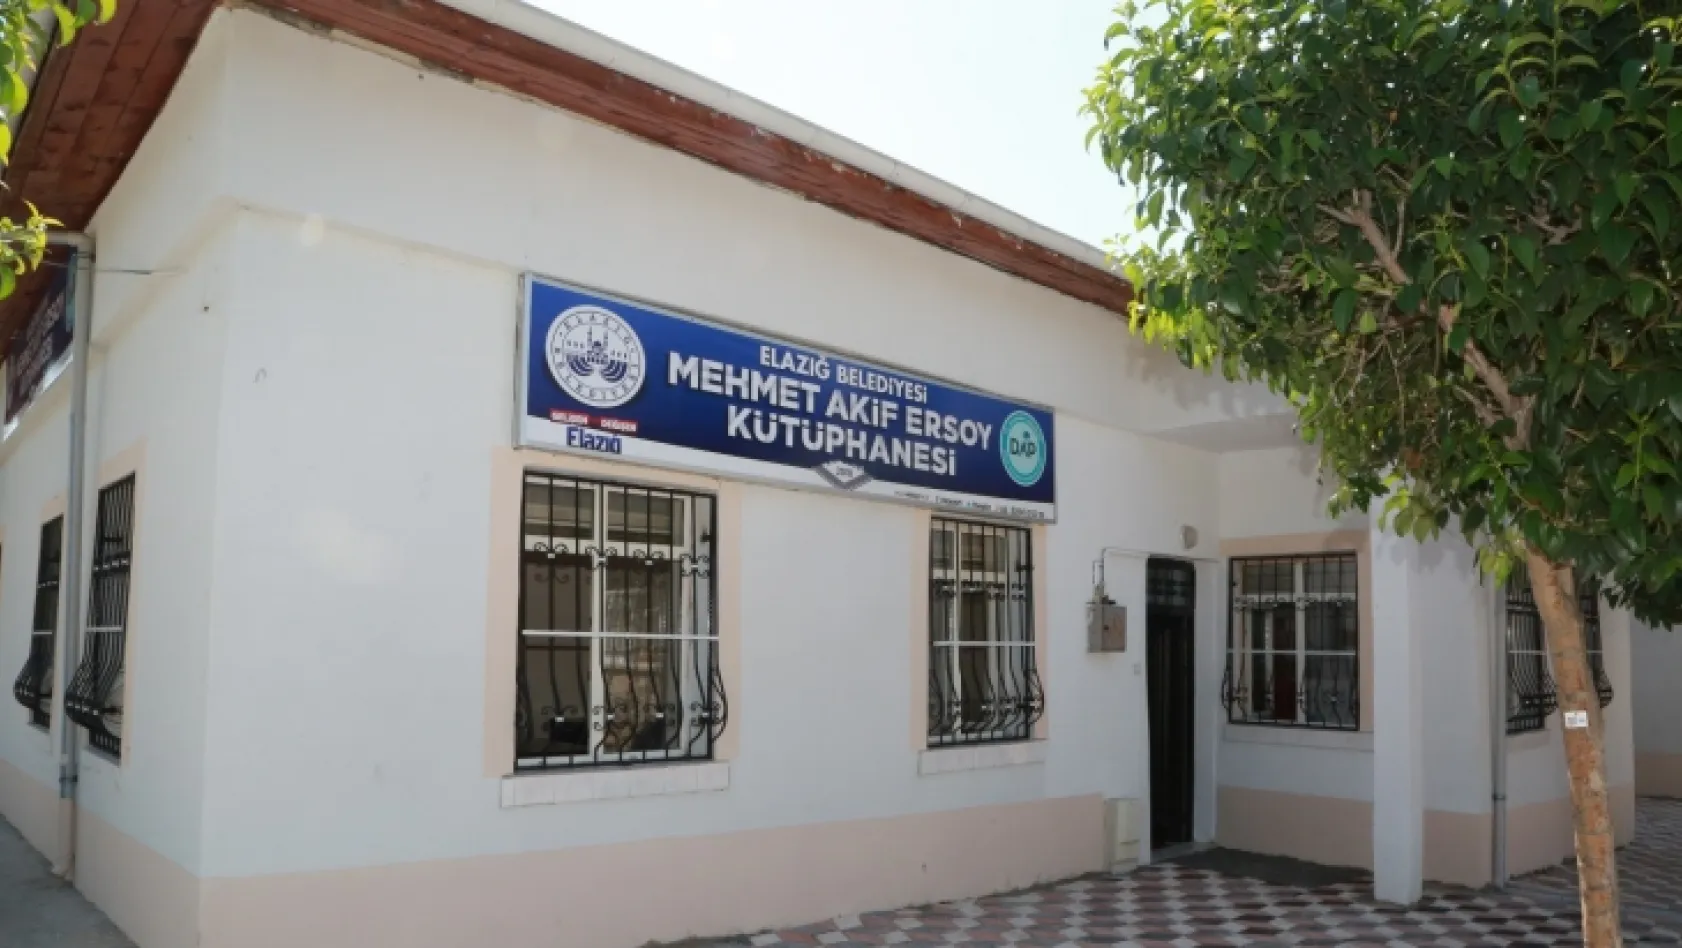 Mehmet Akif Ersoy kütüphanesi açıldı